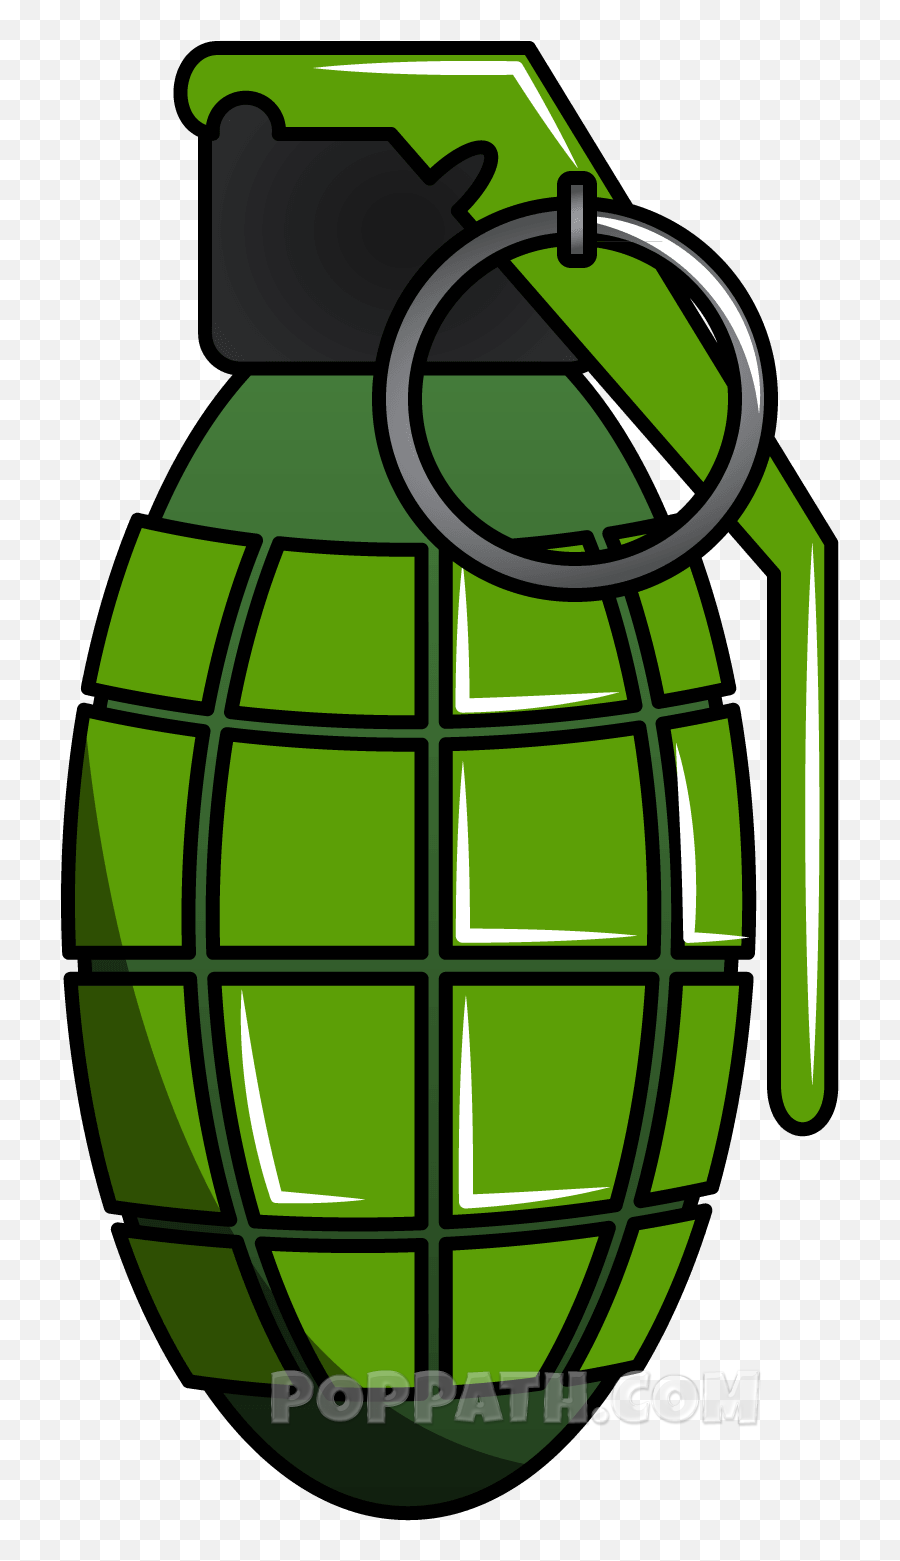 How To Draw A Grenade - Transparent Bomb Clip Art Free Emoji,Grenade Emoji